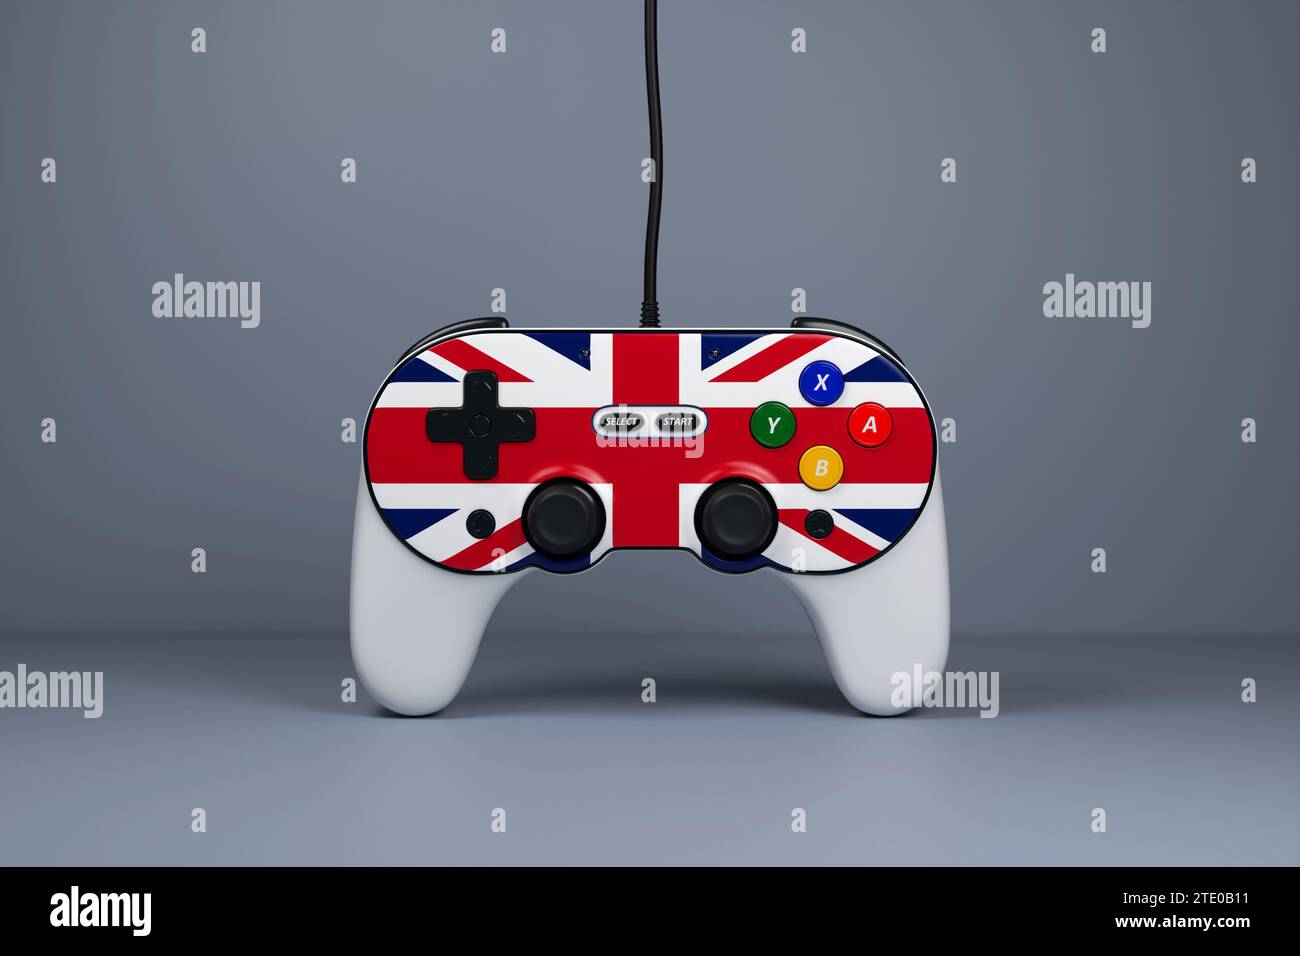 Ilustración 3D, joystick gamepad, consola de juegos o controlador de juegos con los colores de la bandera nacional de Gran Bretaña. Juegos de ordenador. Dibujos animados mini Foto de stock